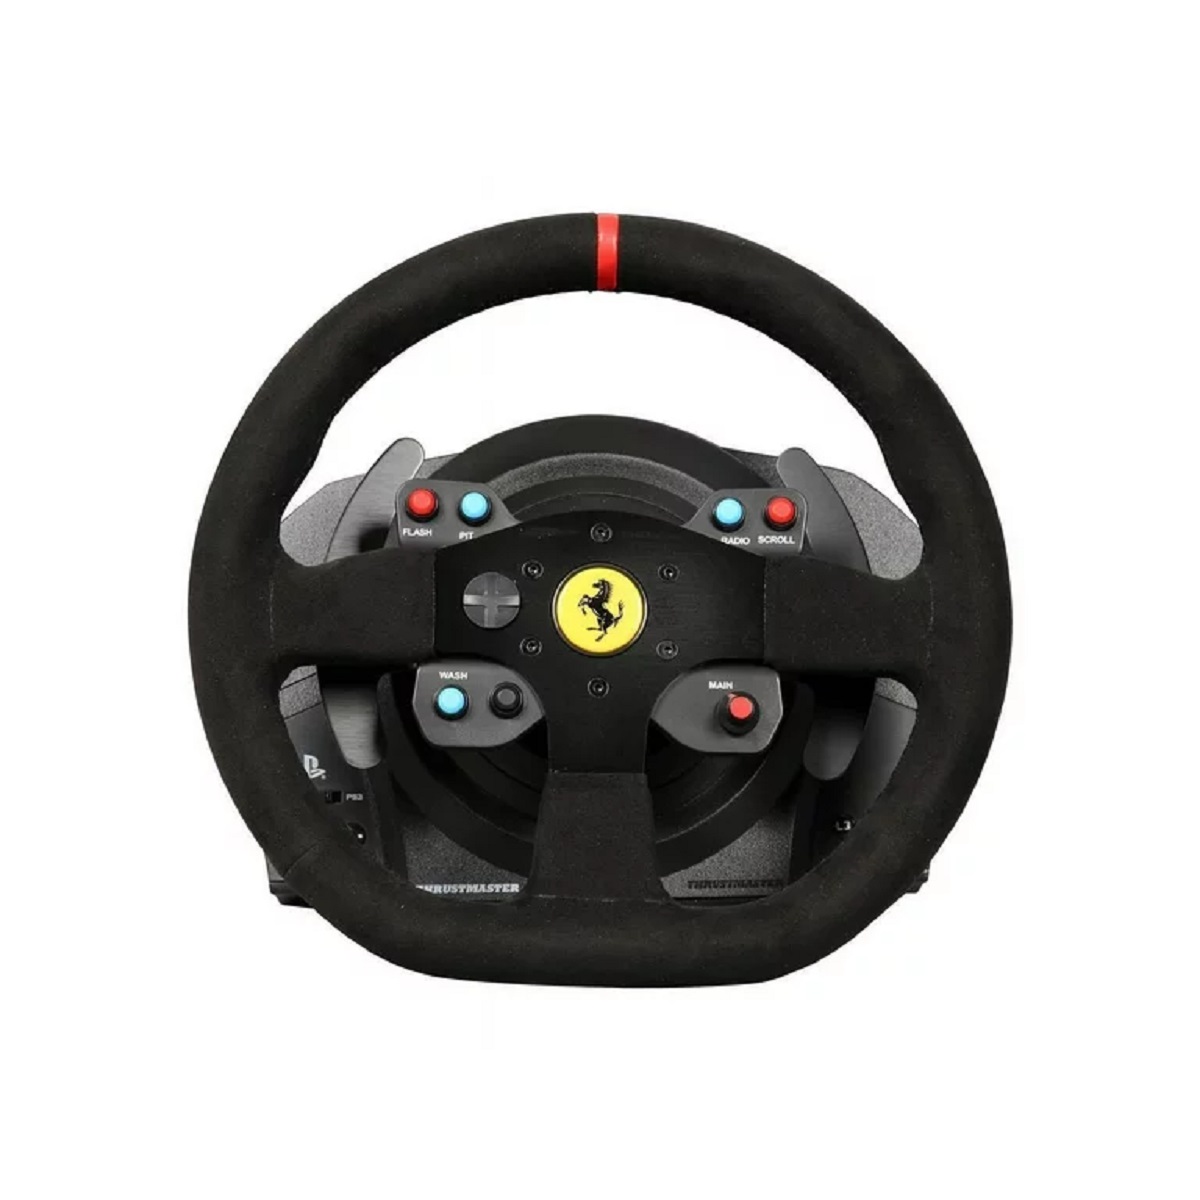 How To Fix T300 Ferrari Integral Racing Wheel